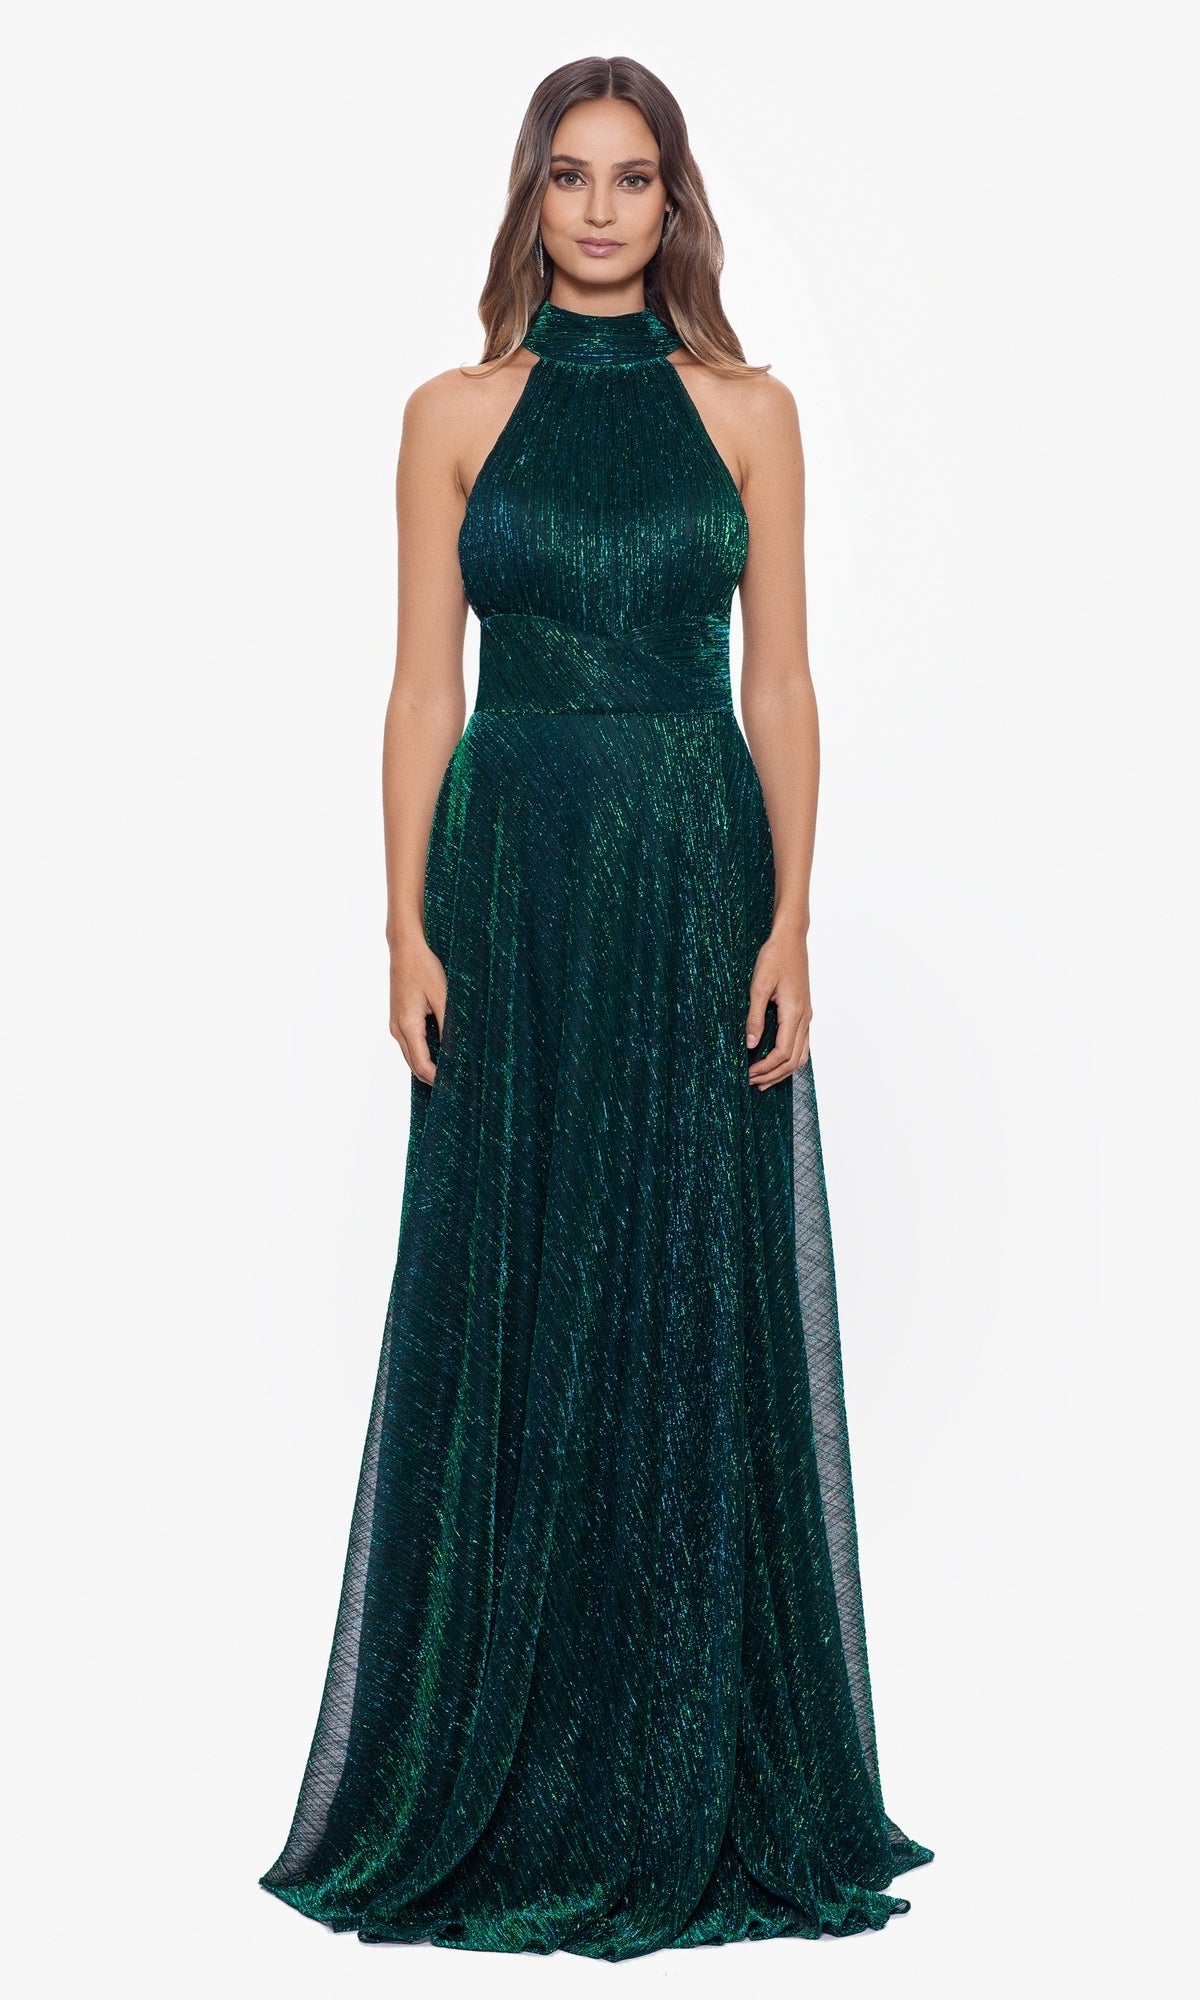 Empire-Waist High-Neck Long Shimmer Prom Dress A24948